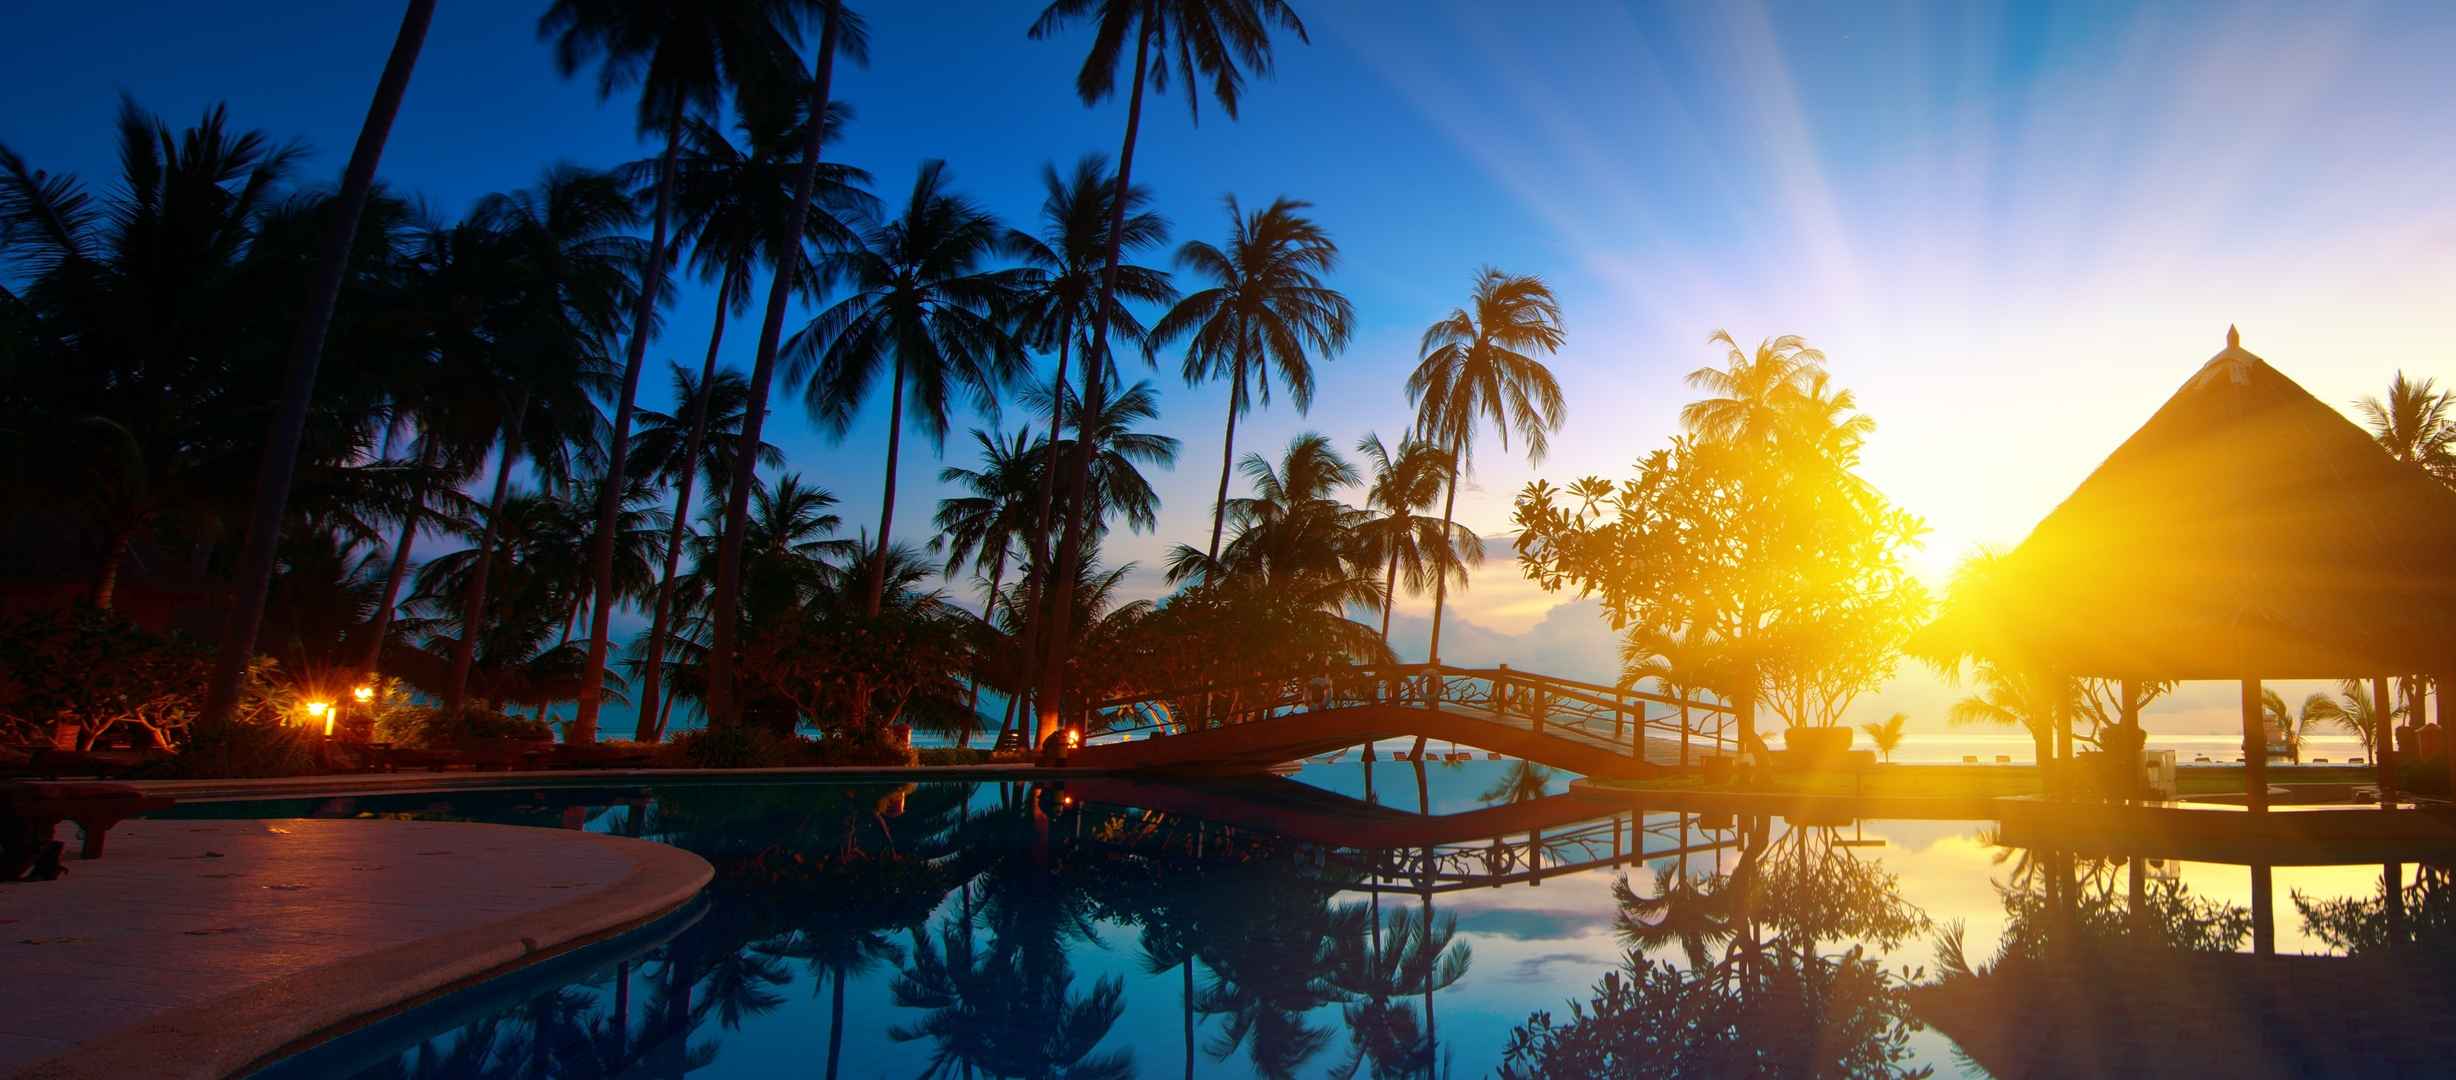 阳光下棕榈树海水泰国风景壁纸